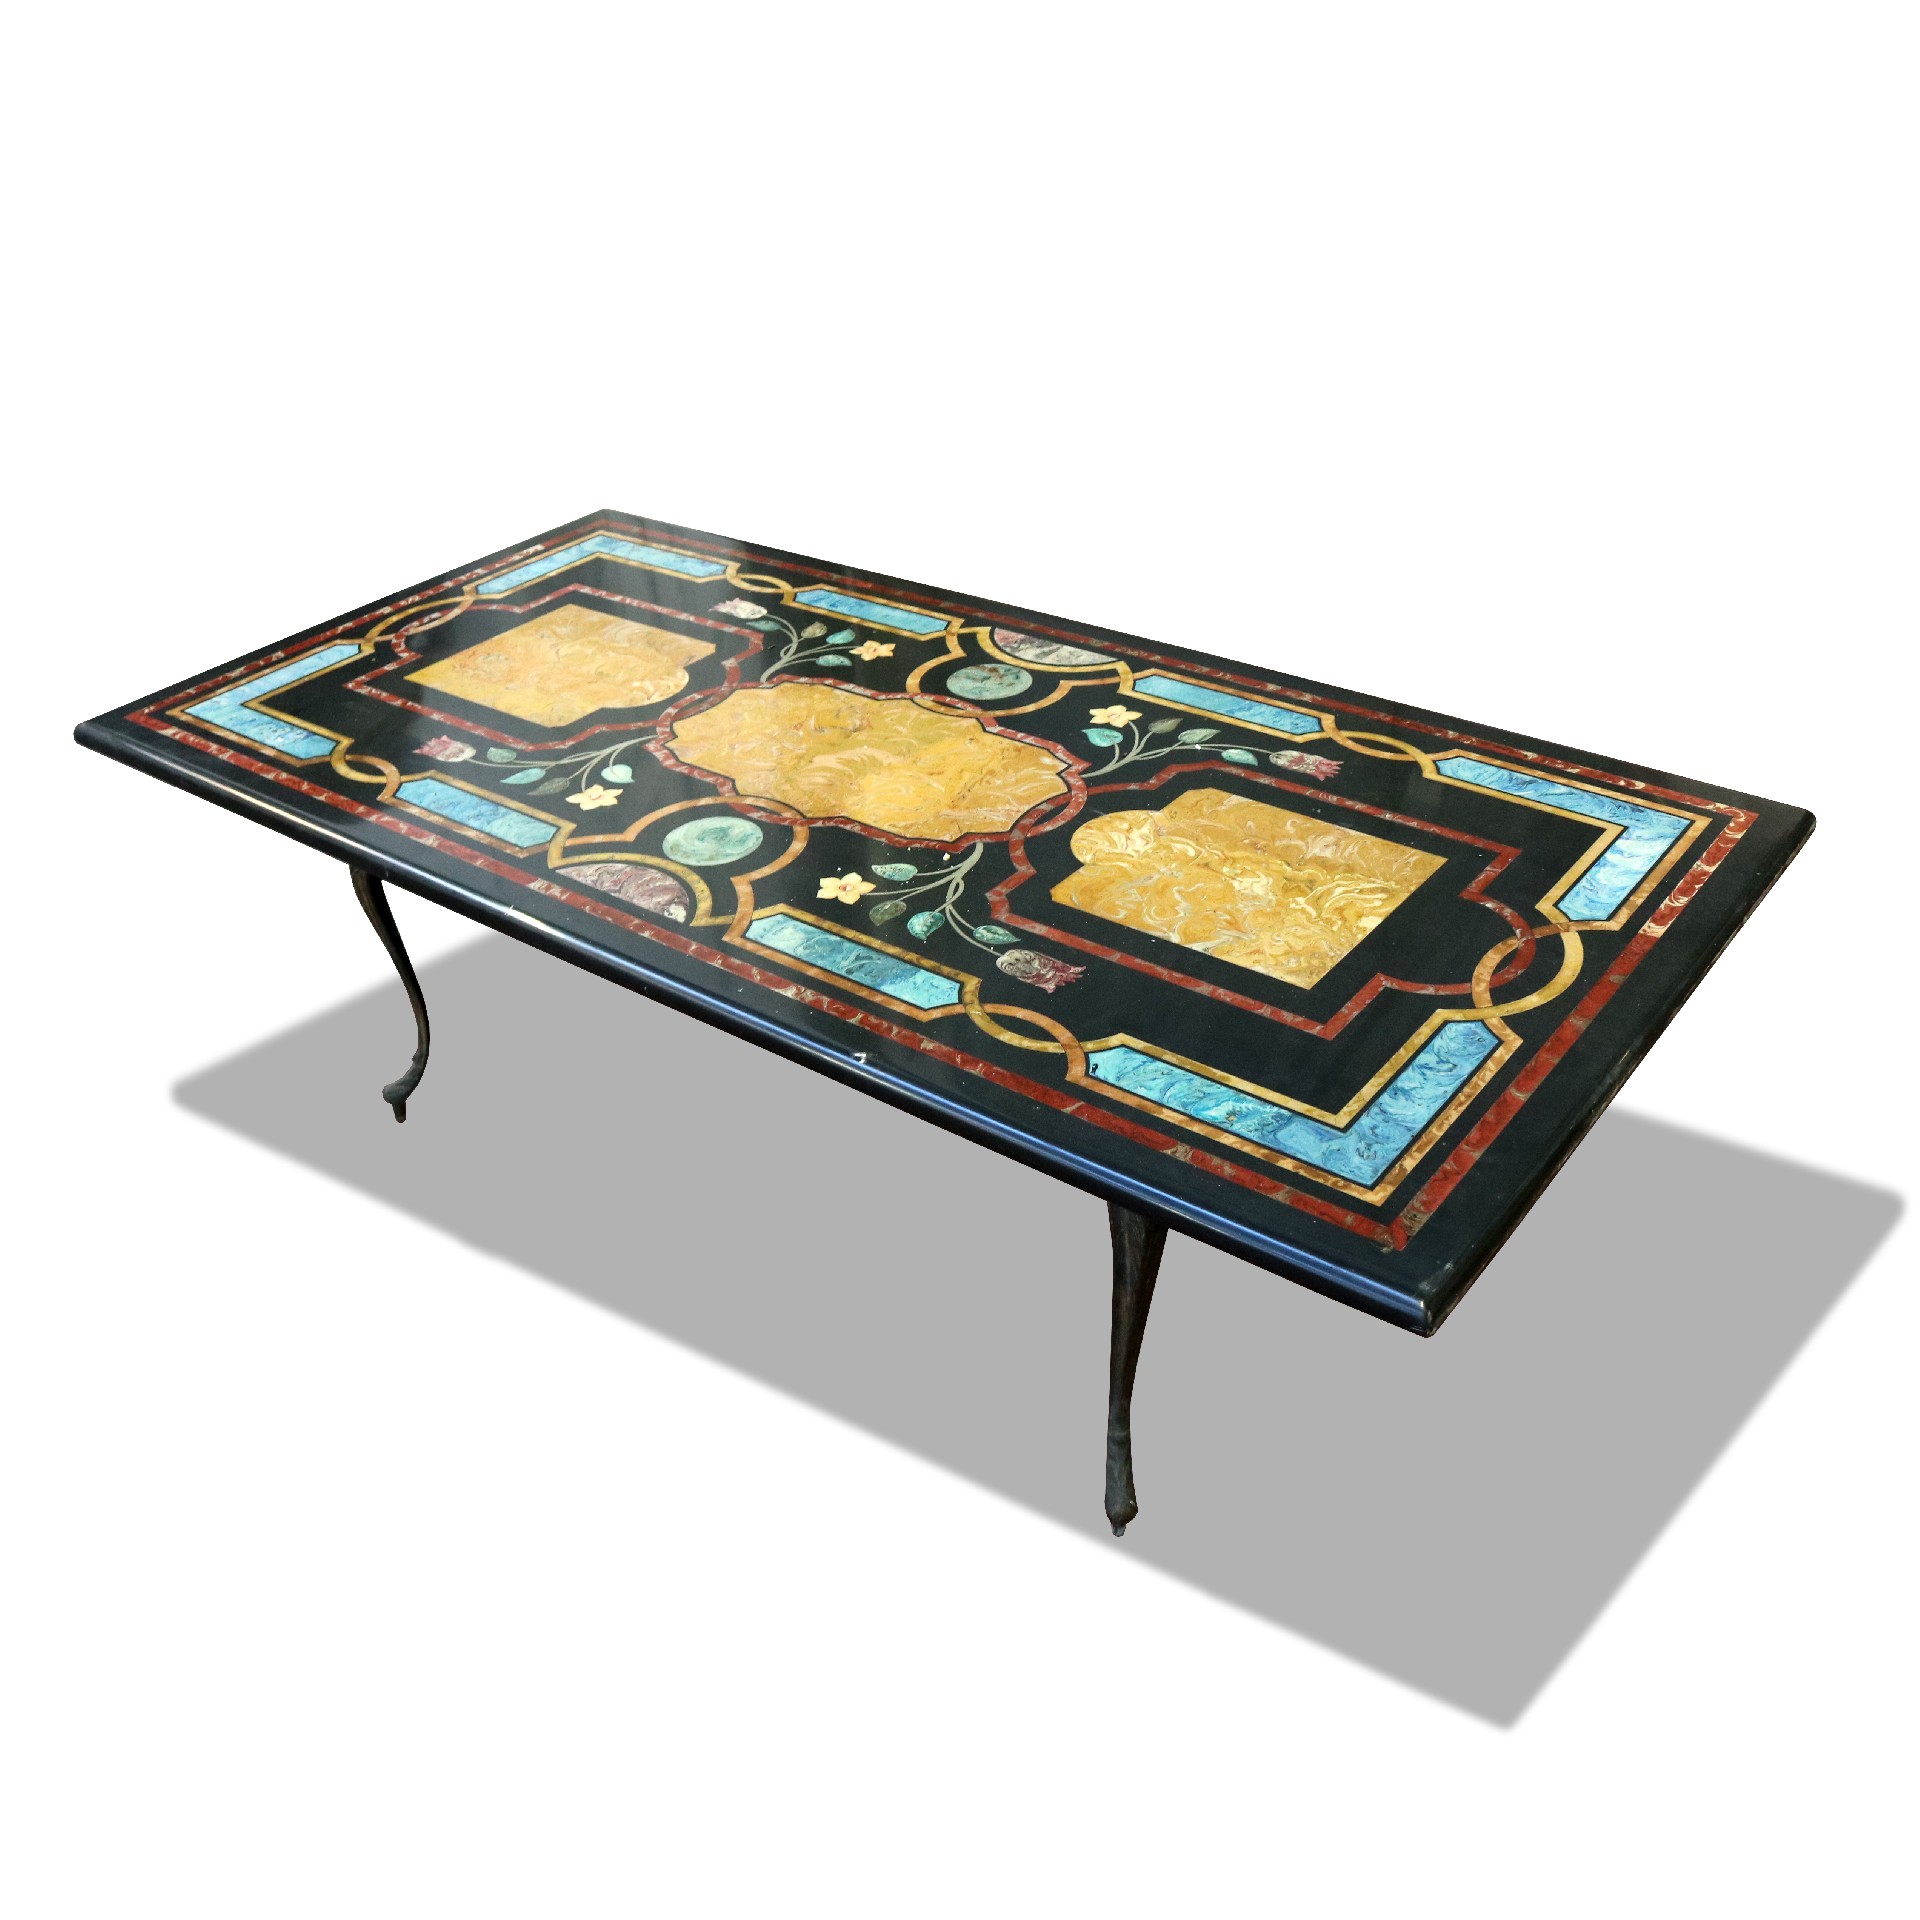 Tavolo con piano in scagliola e base in ottone. - Tavoli in vari materiali - Tavoli e complementi - Prodotti - Antichità Fiorillo